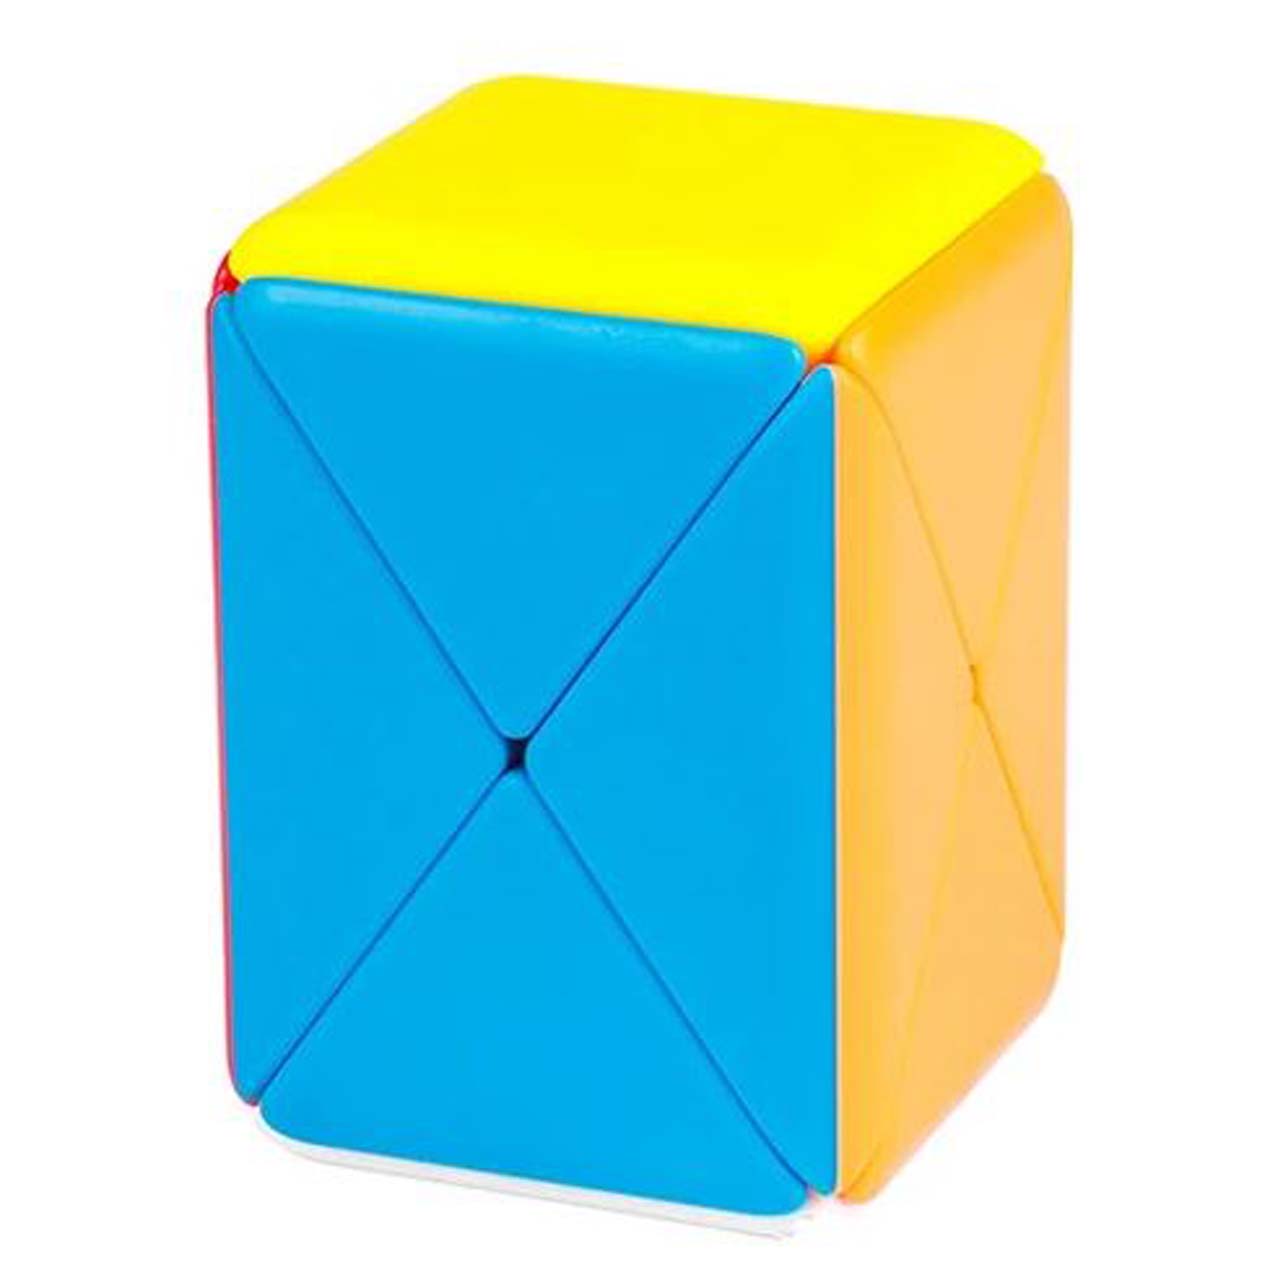 Container Cube MoFang Jiaoshi